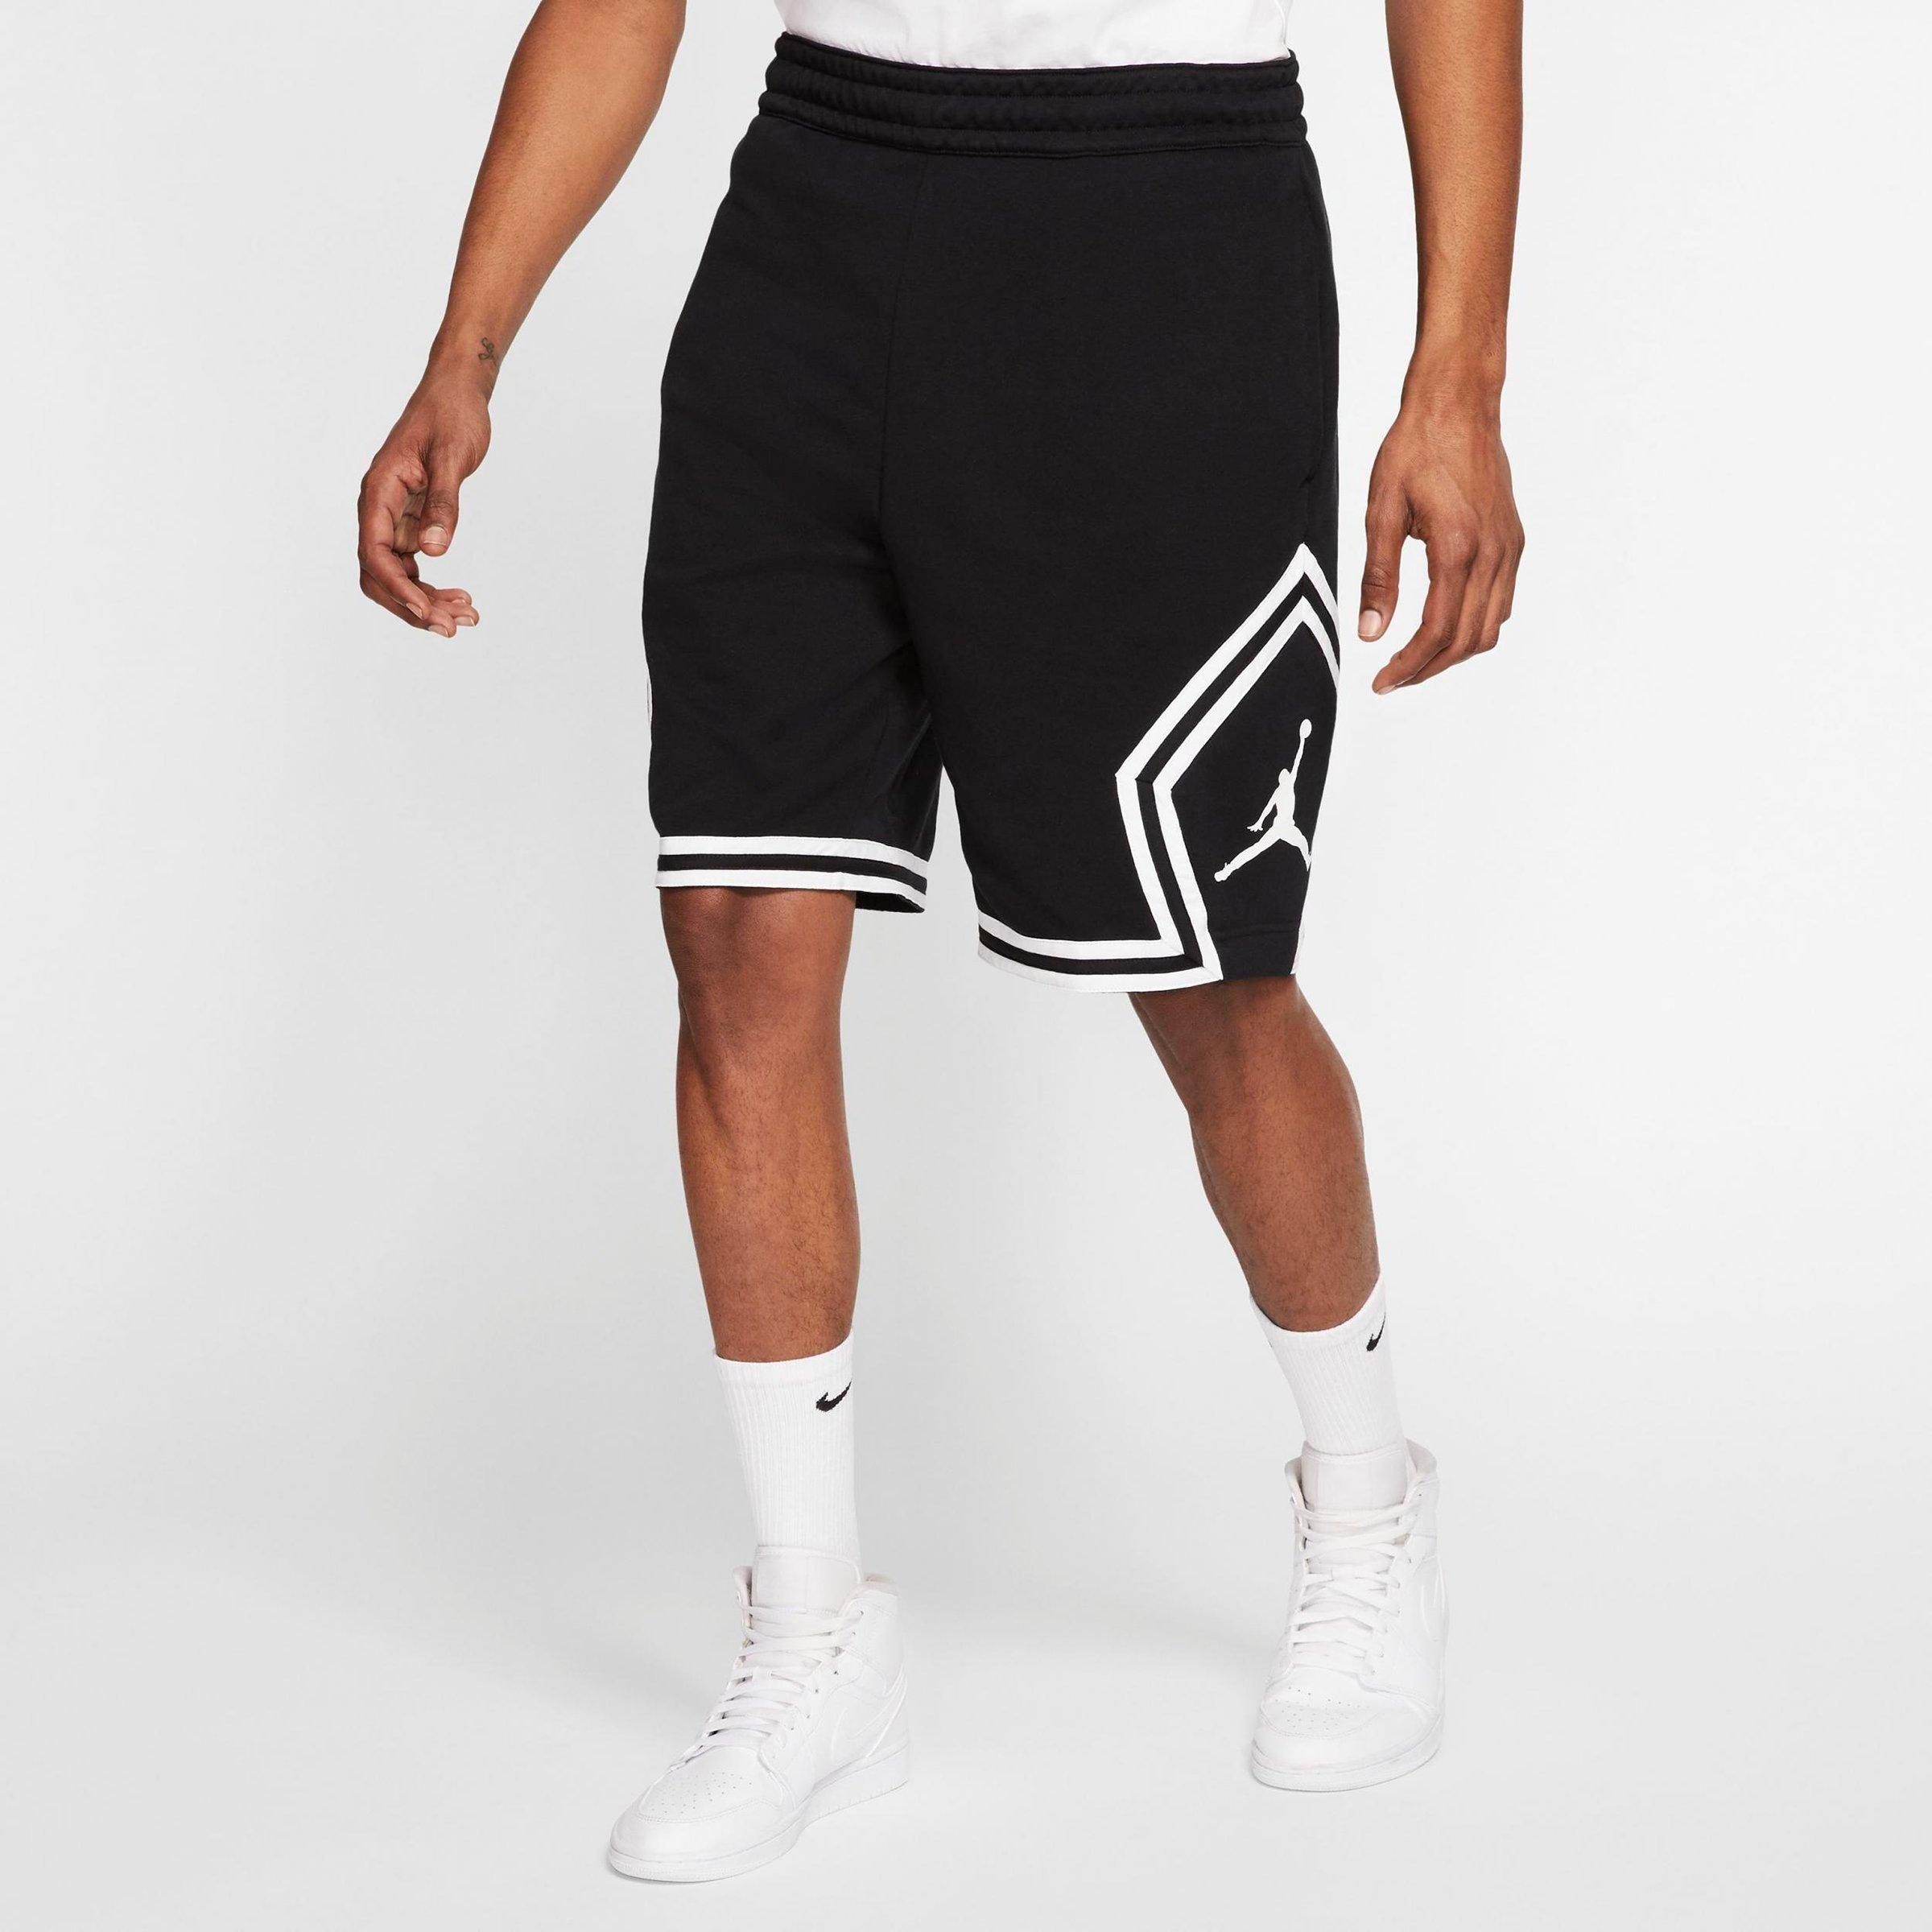 jumpman jordan shorts